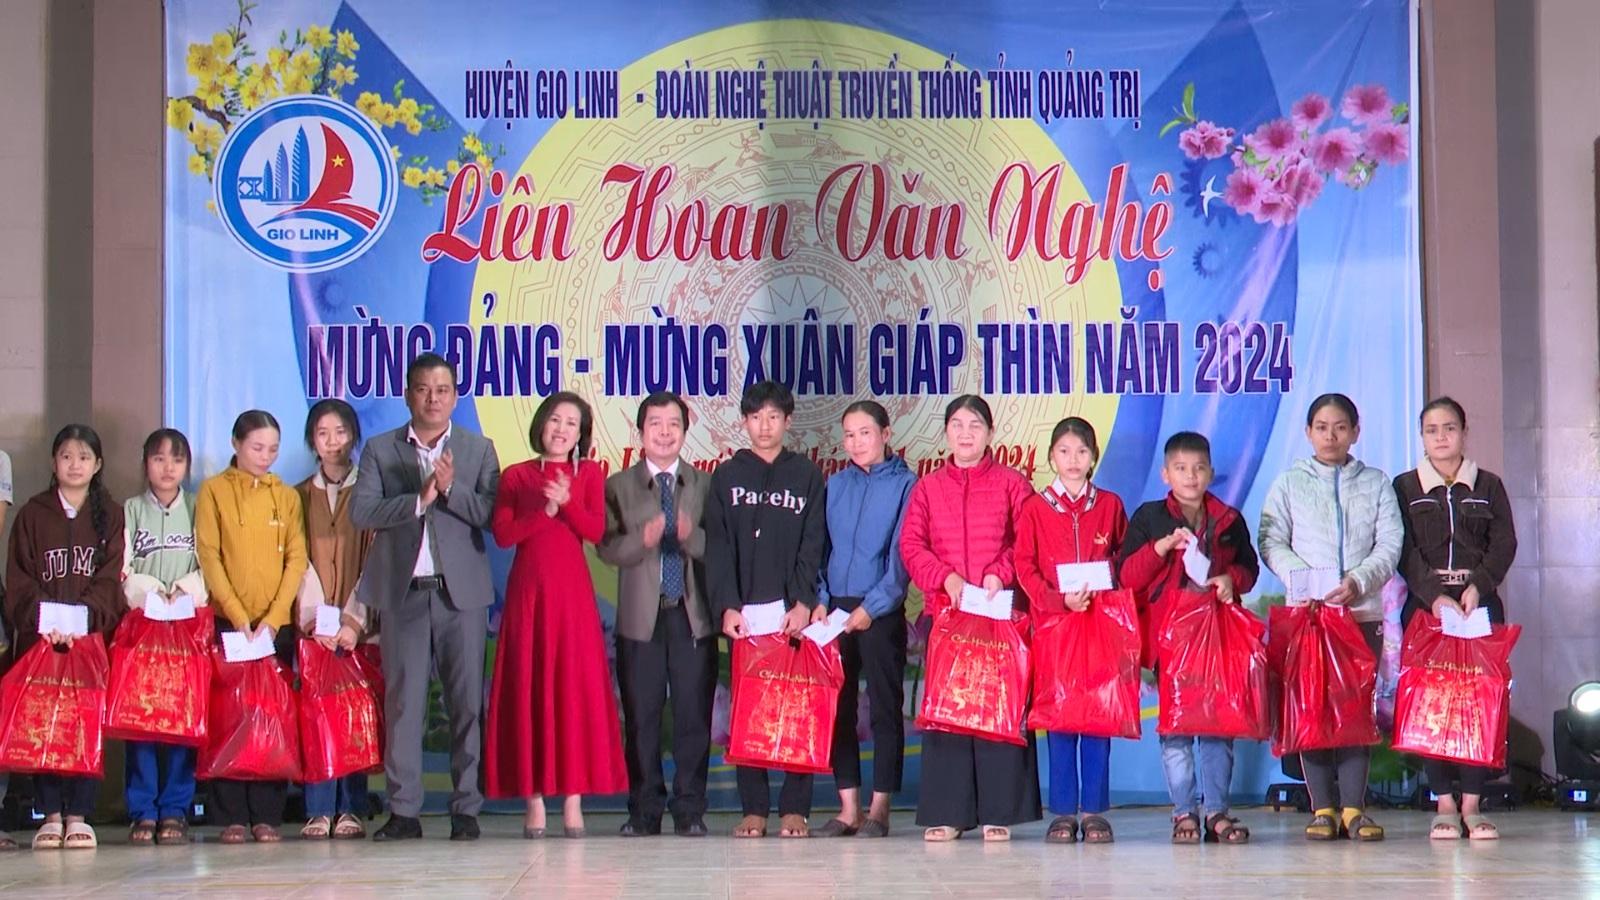 Trung tâm VHTT & TDTT huyện Gio Linh phối hợp Đoàn nghệ thuật truyền thống tỉnh Quảng Trị tổ chức...